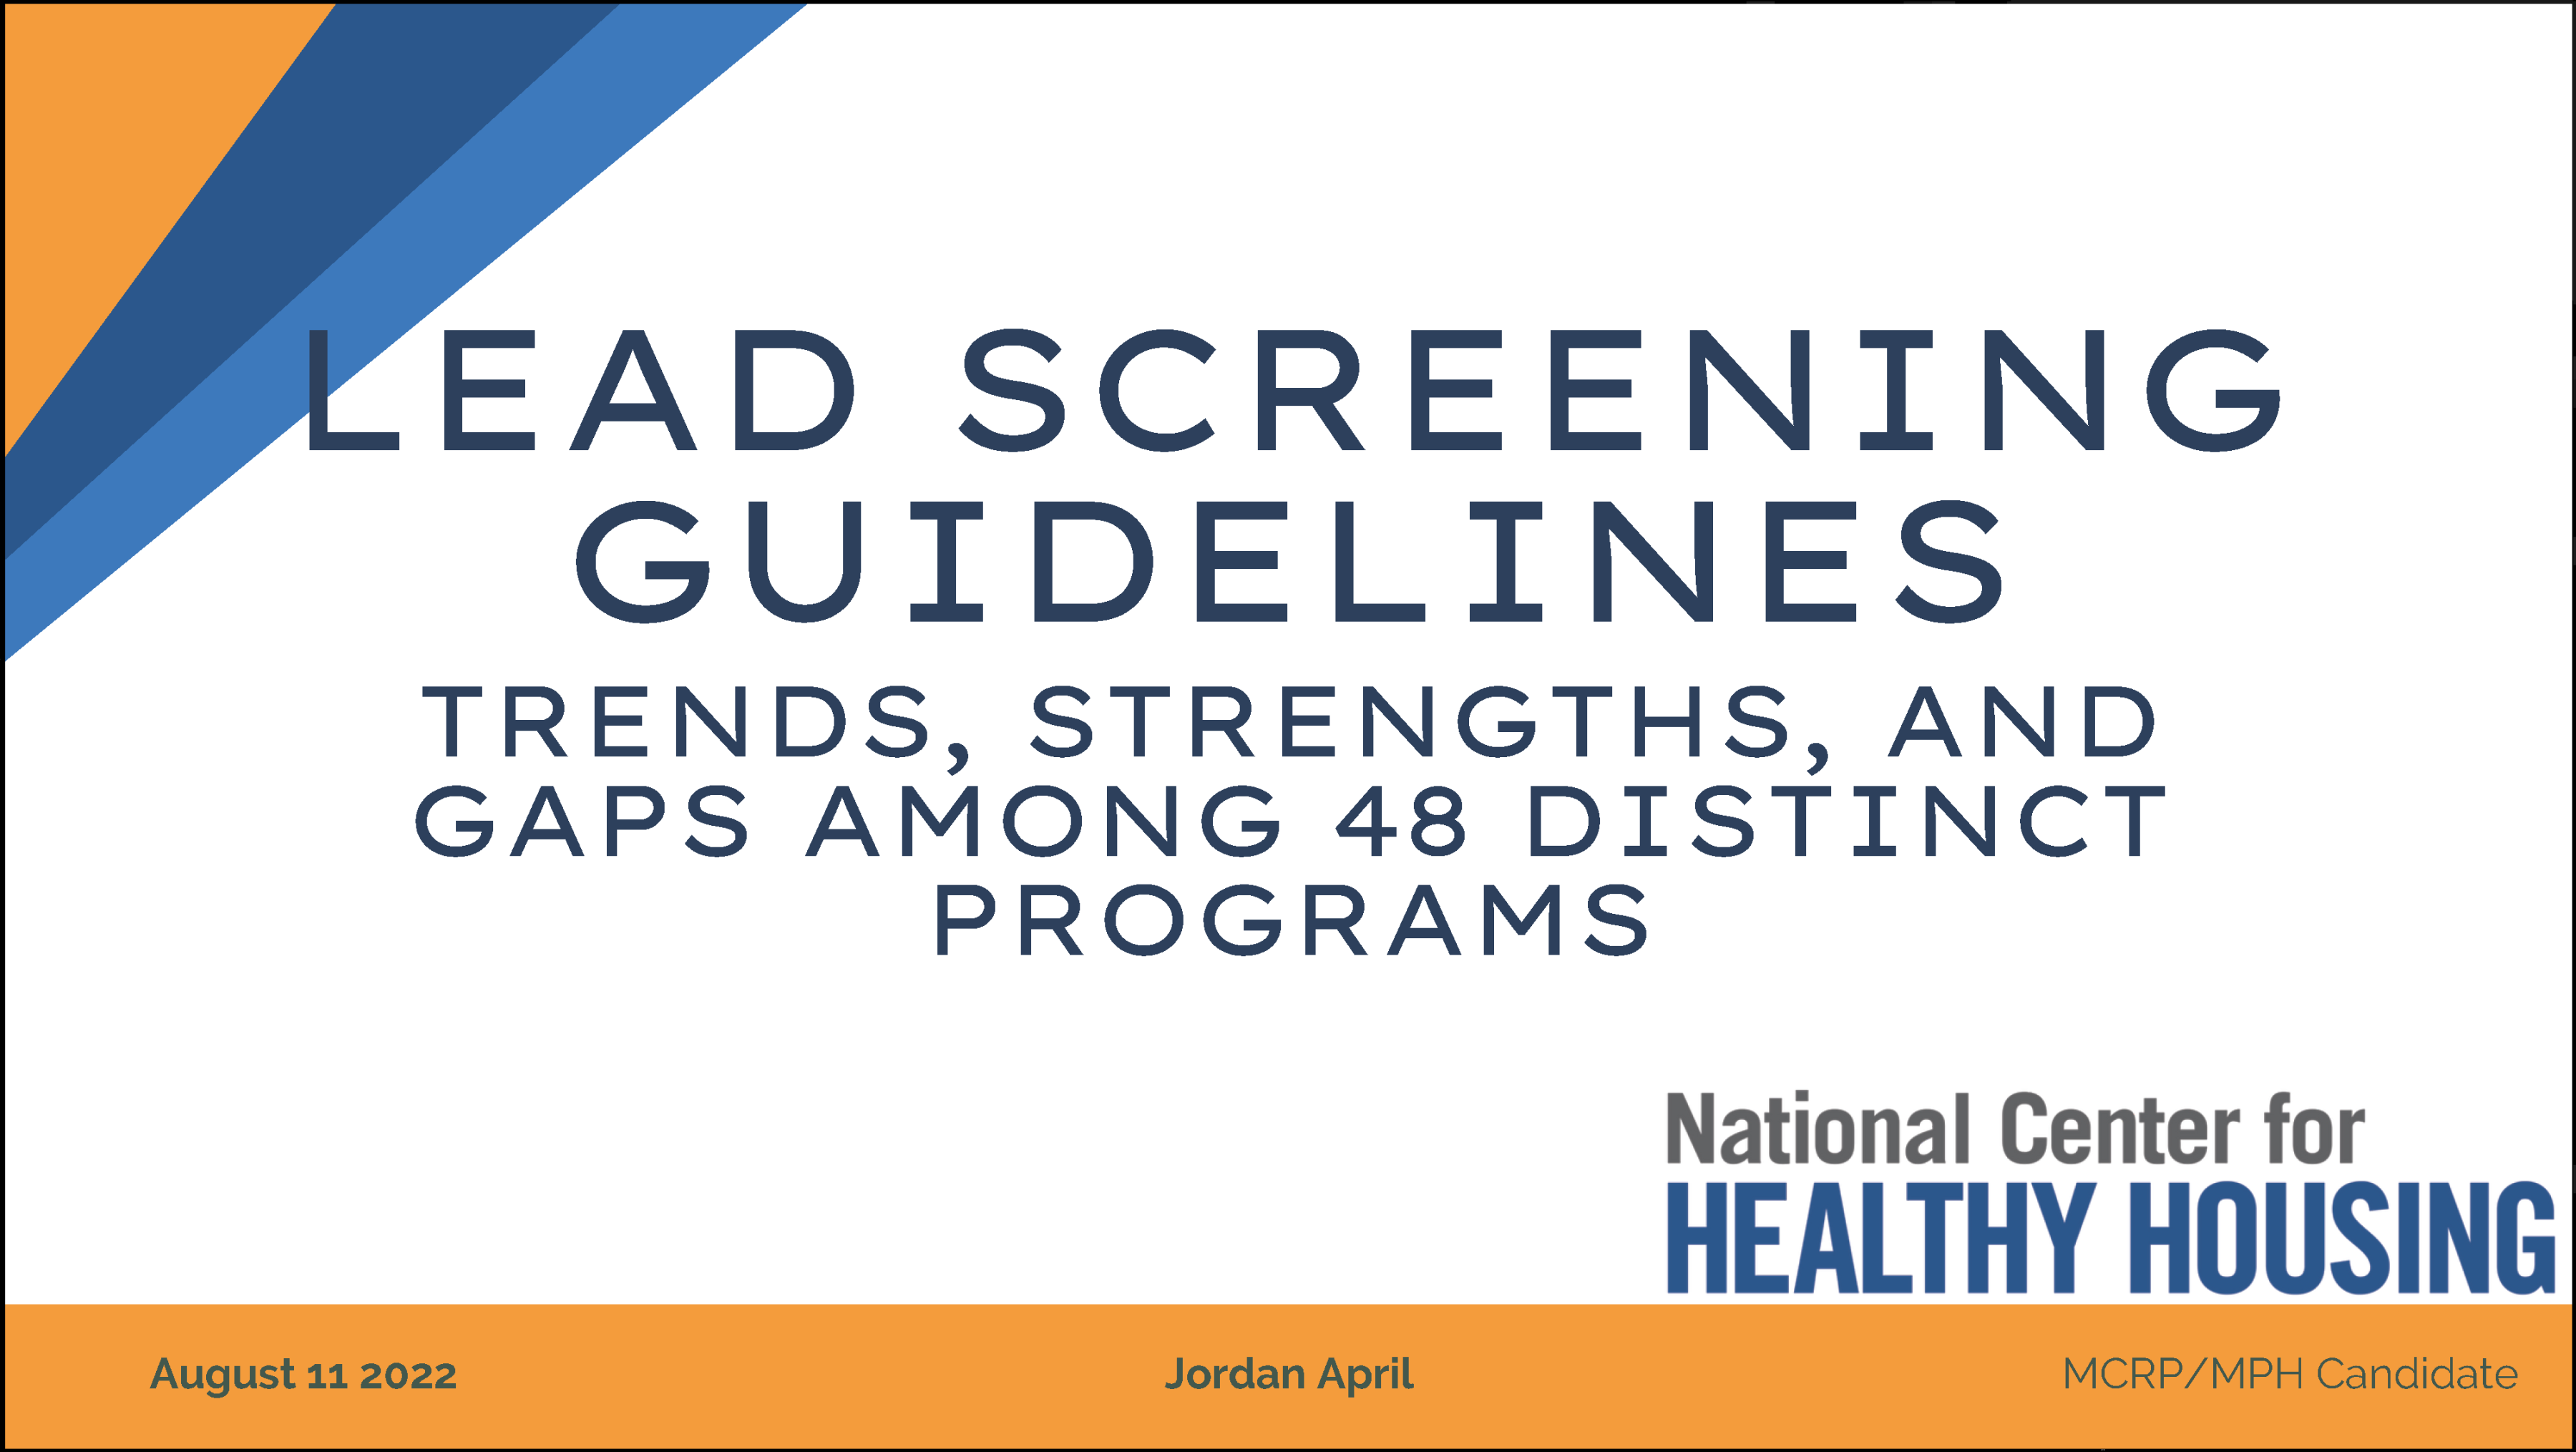 Lead Screening Guidelines [PowerPoint]